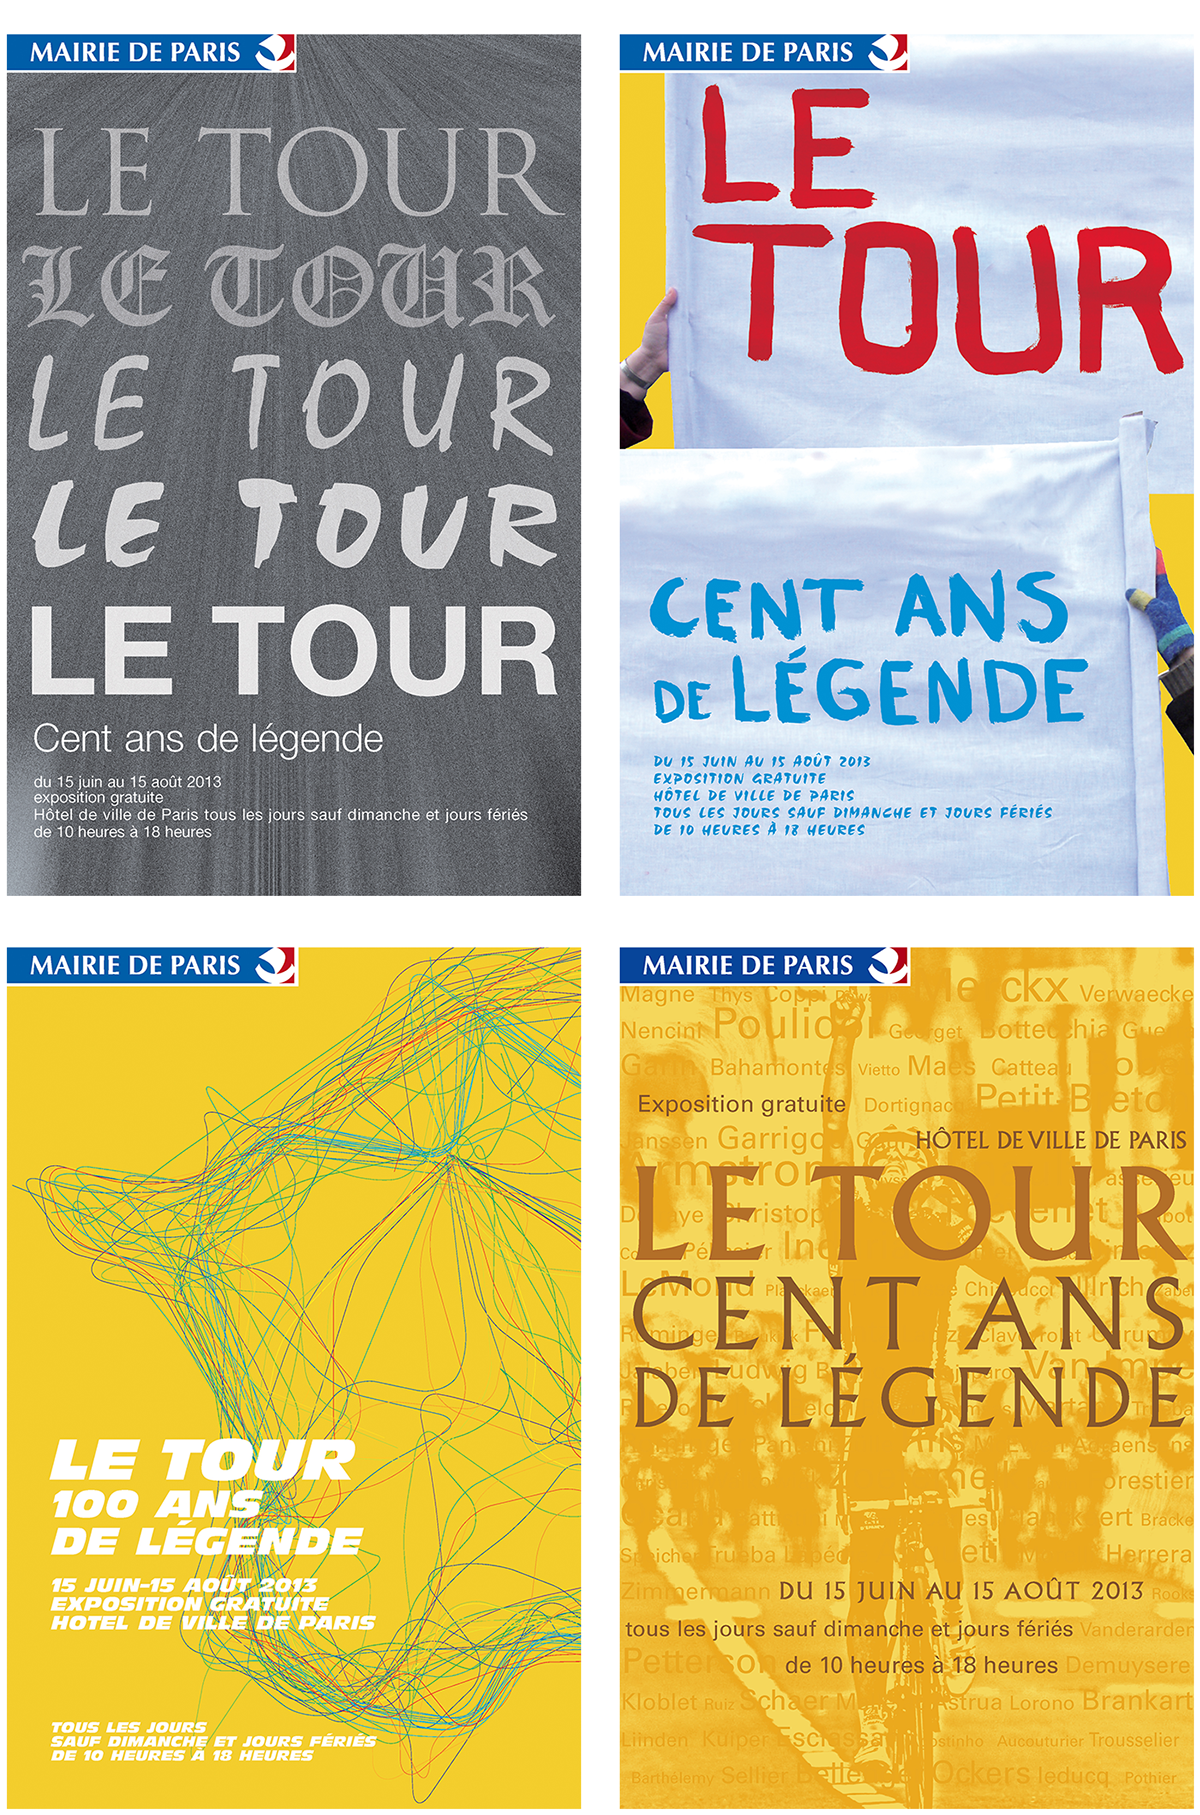 Tour de France légende bts projet cent ans mairie de paris france